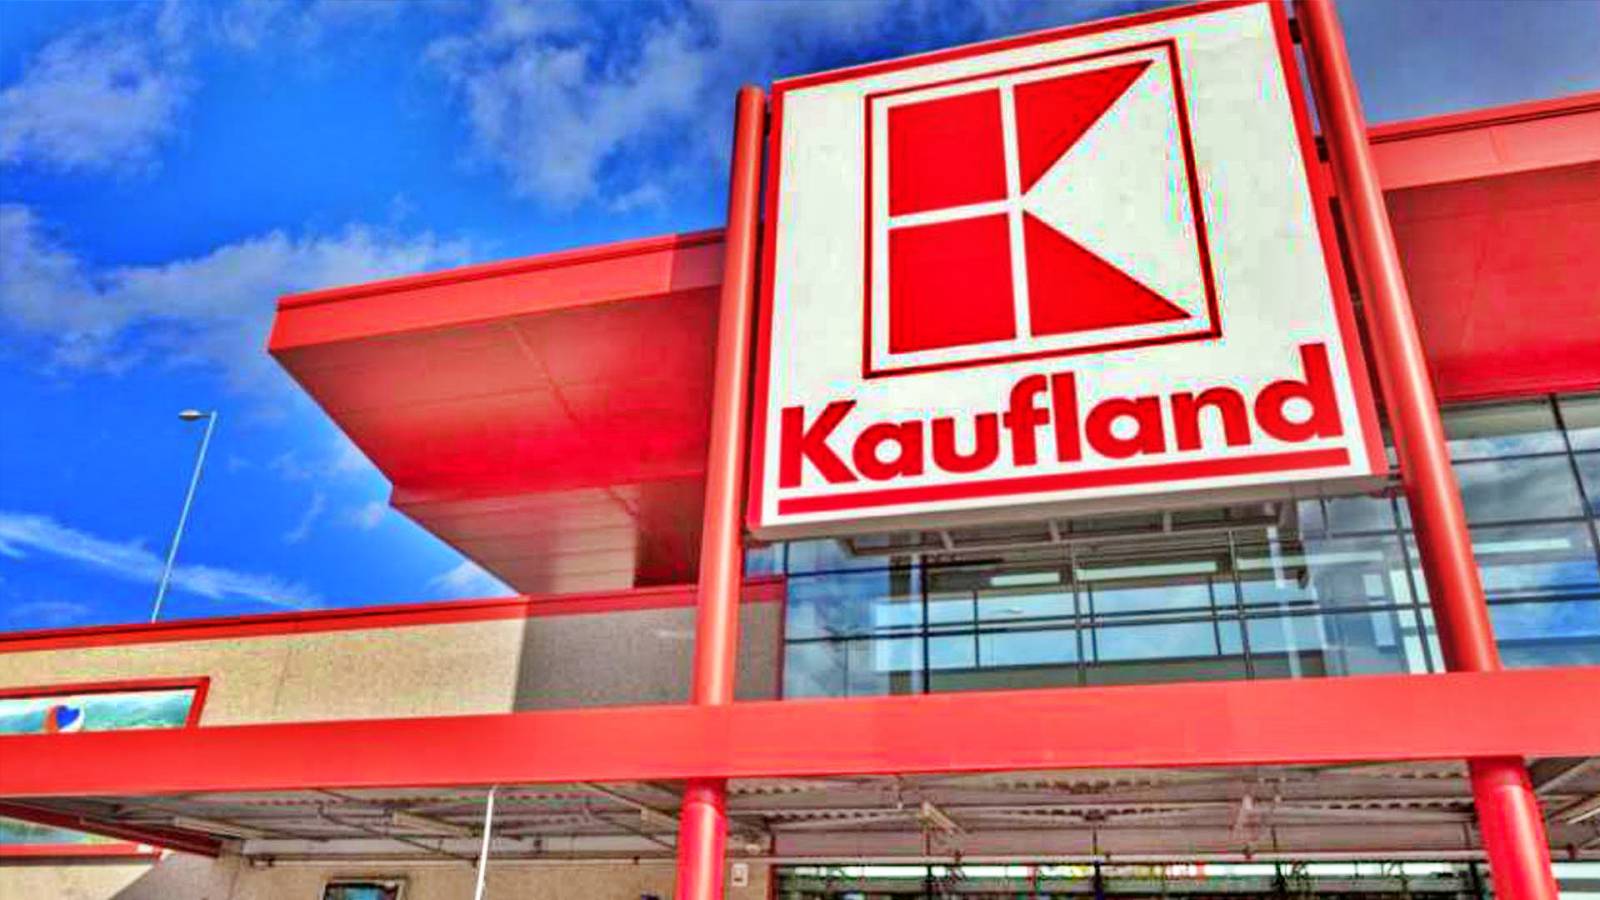 Decisione ufficiale di Kaufland CHE CAMBIA i negozi annunciata ai clienti